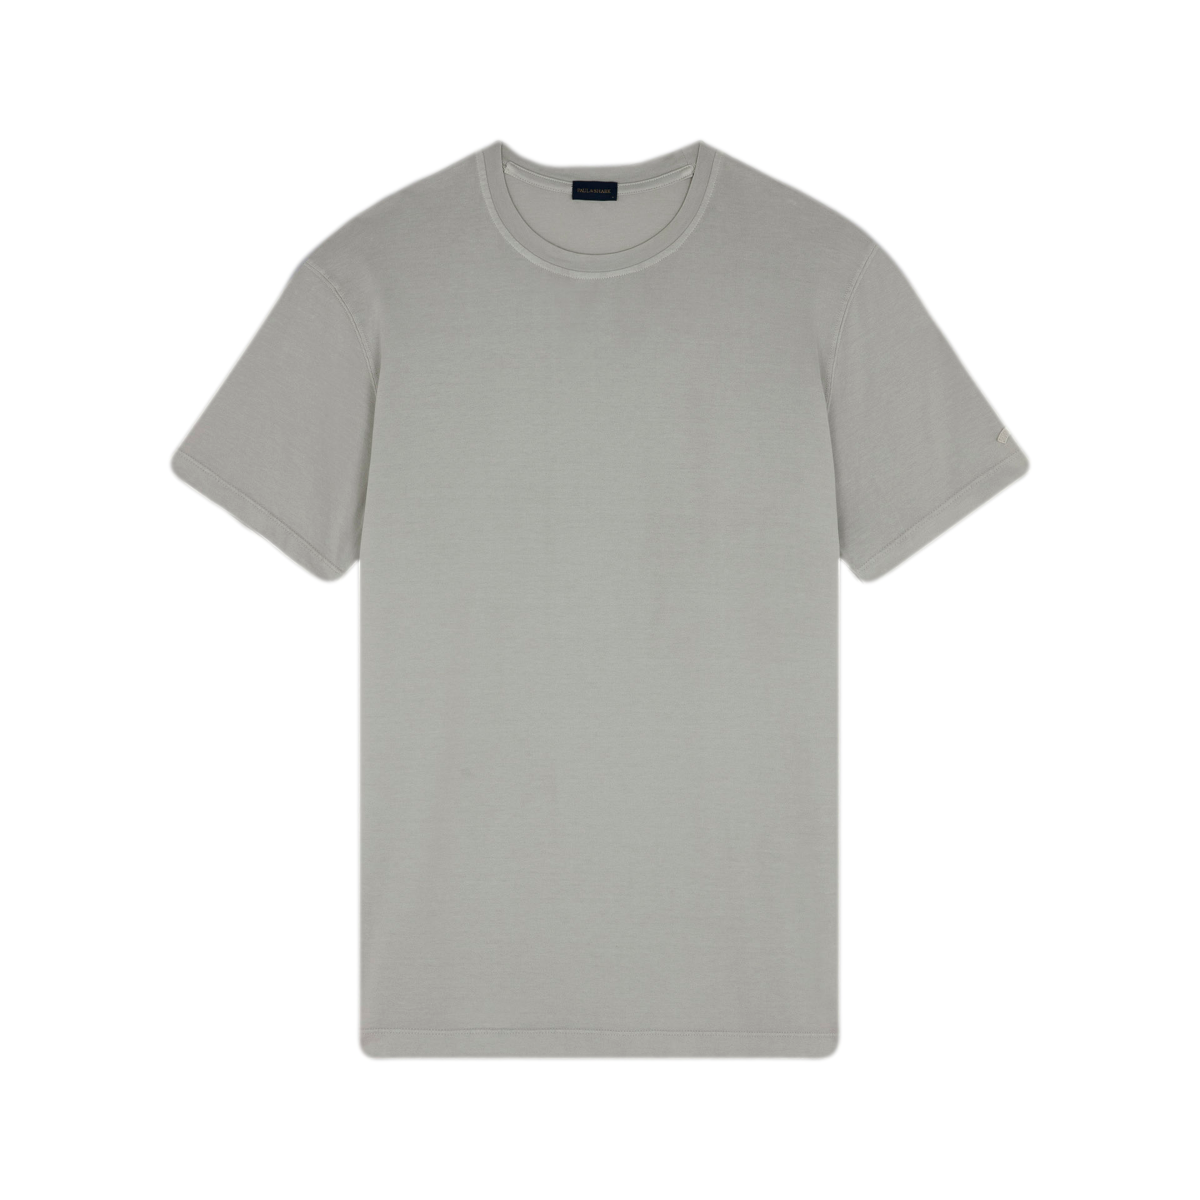 Paul & Shark GD Cotton Jersey T-Shirt 029 Almond